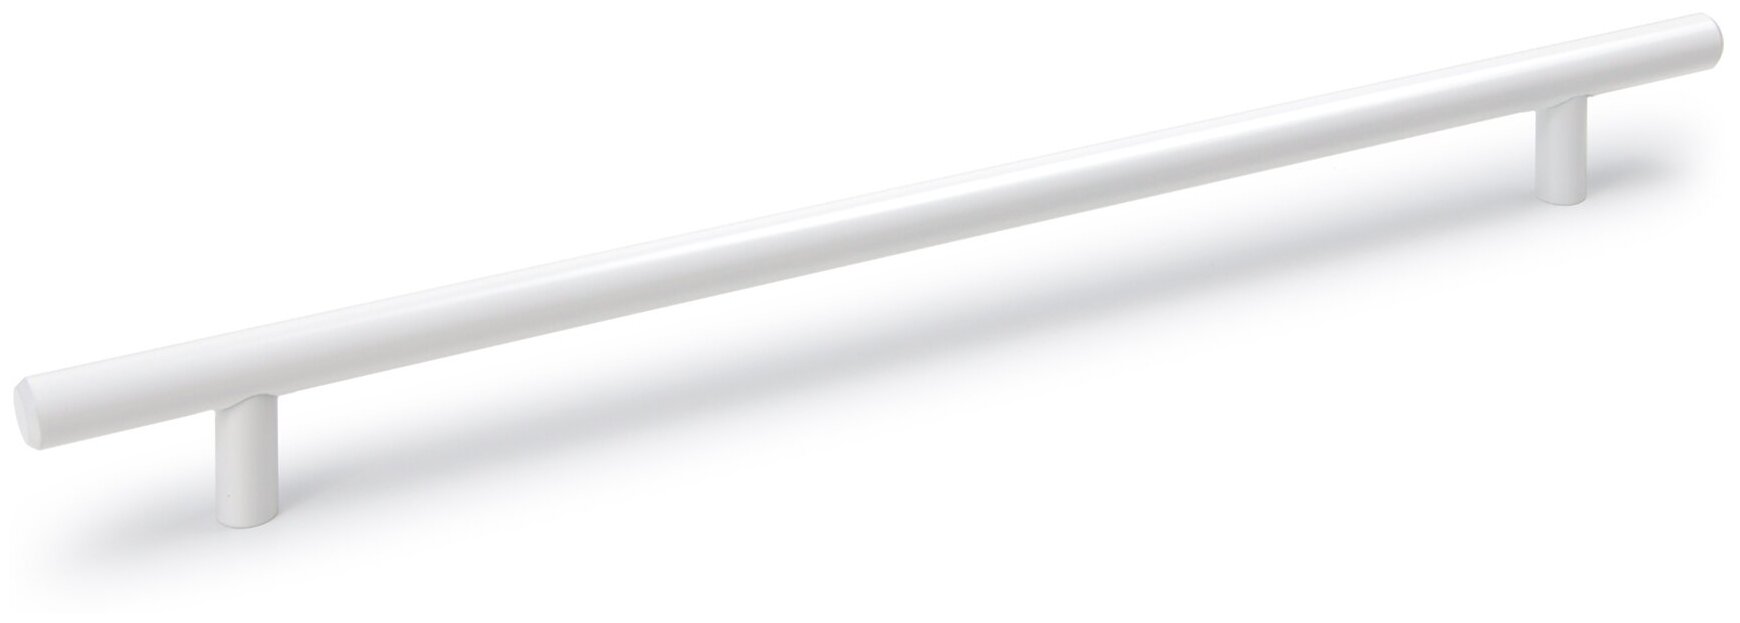 Мебельная ручка - рейлинг длина 160 мм диаметр 12 мм цвет - белый